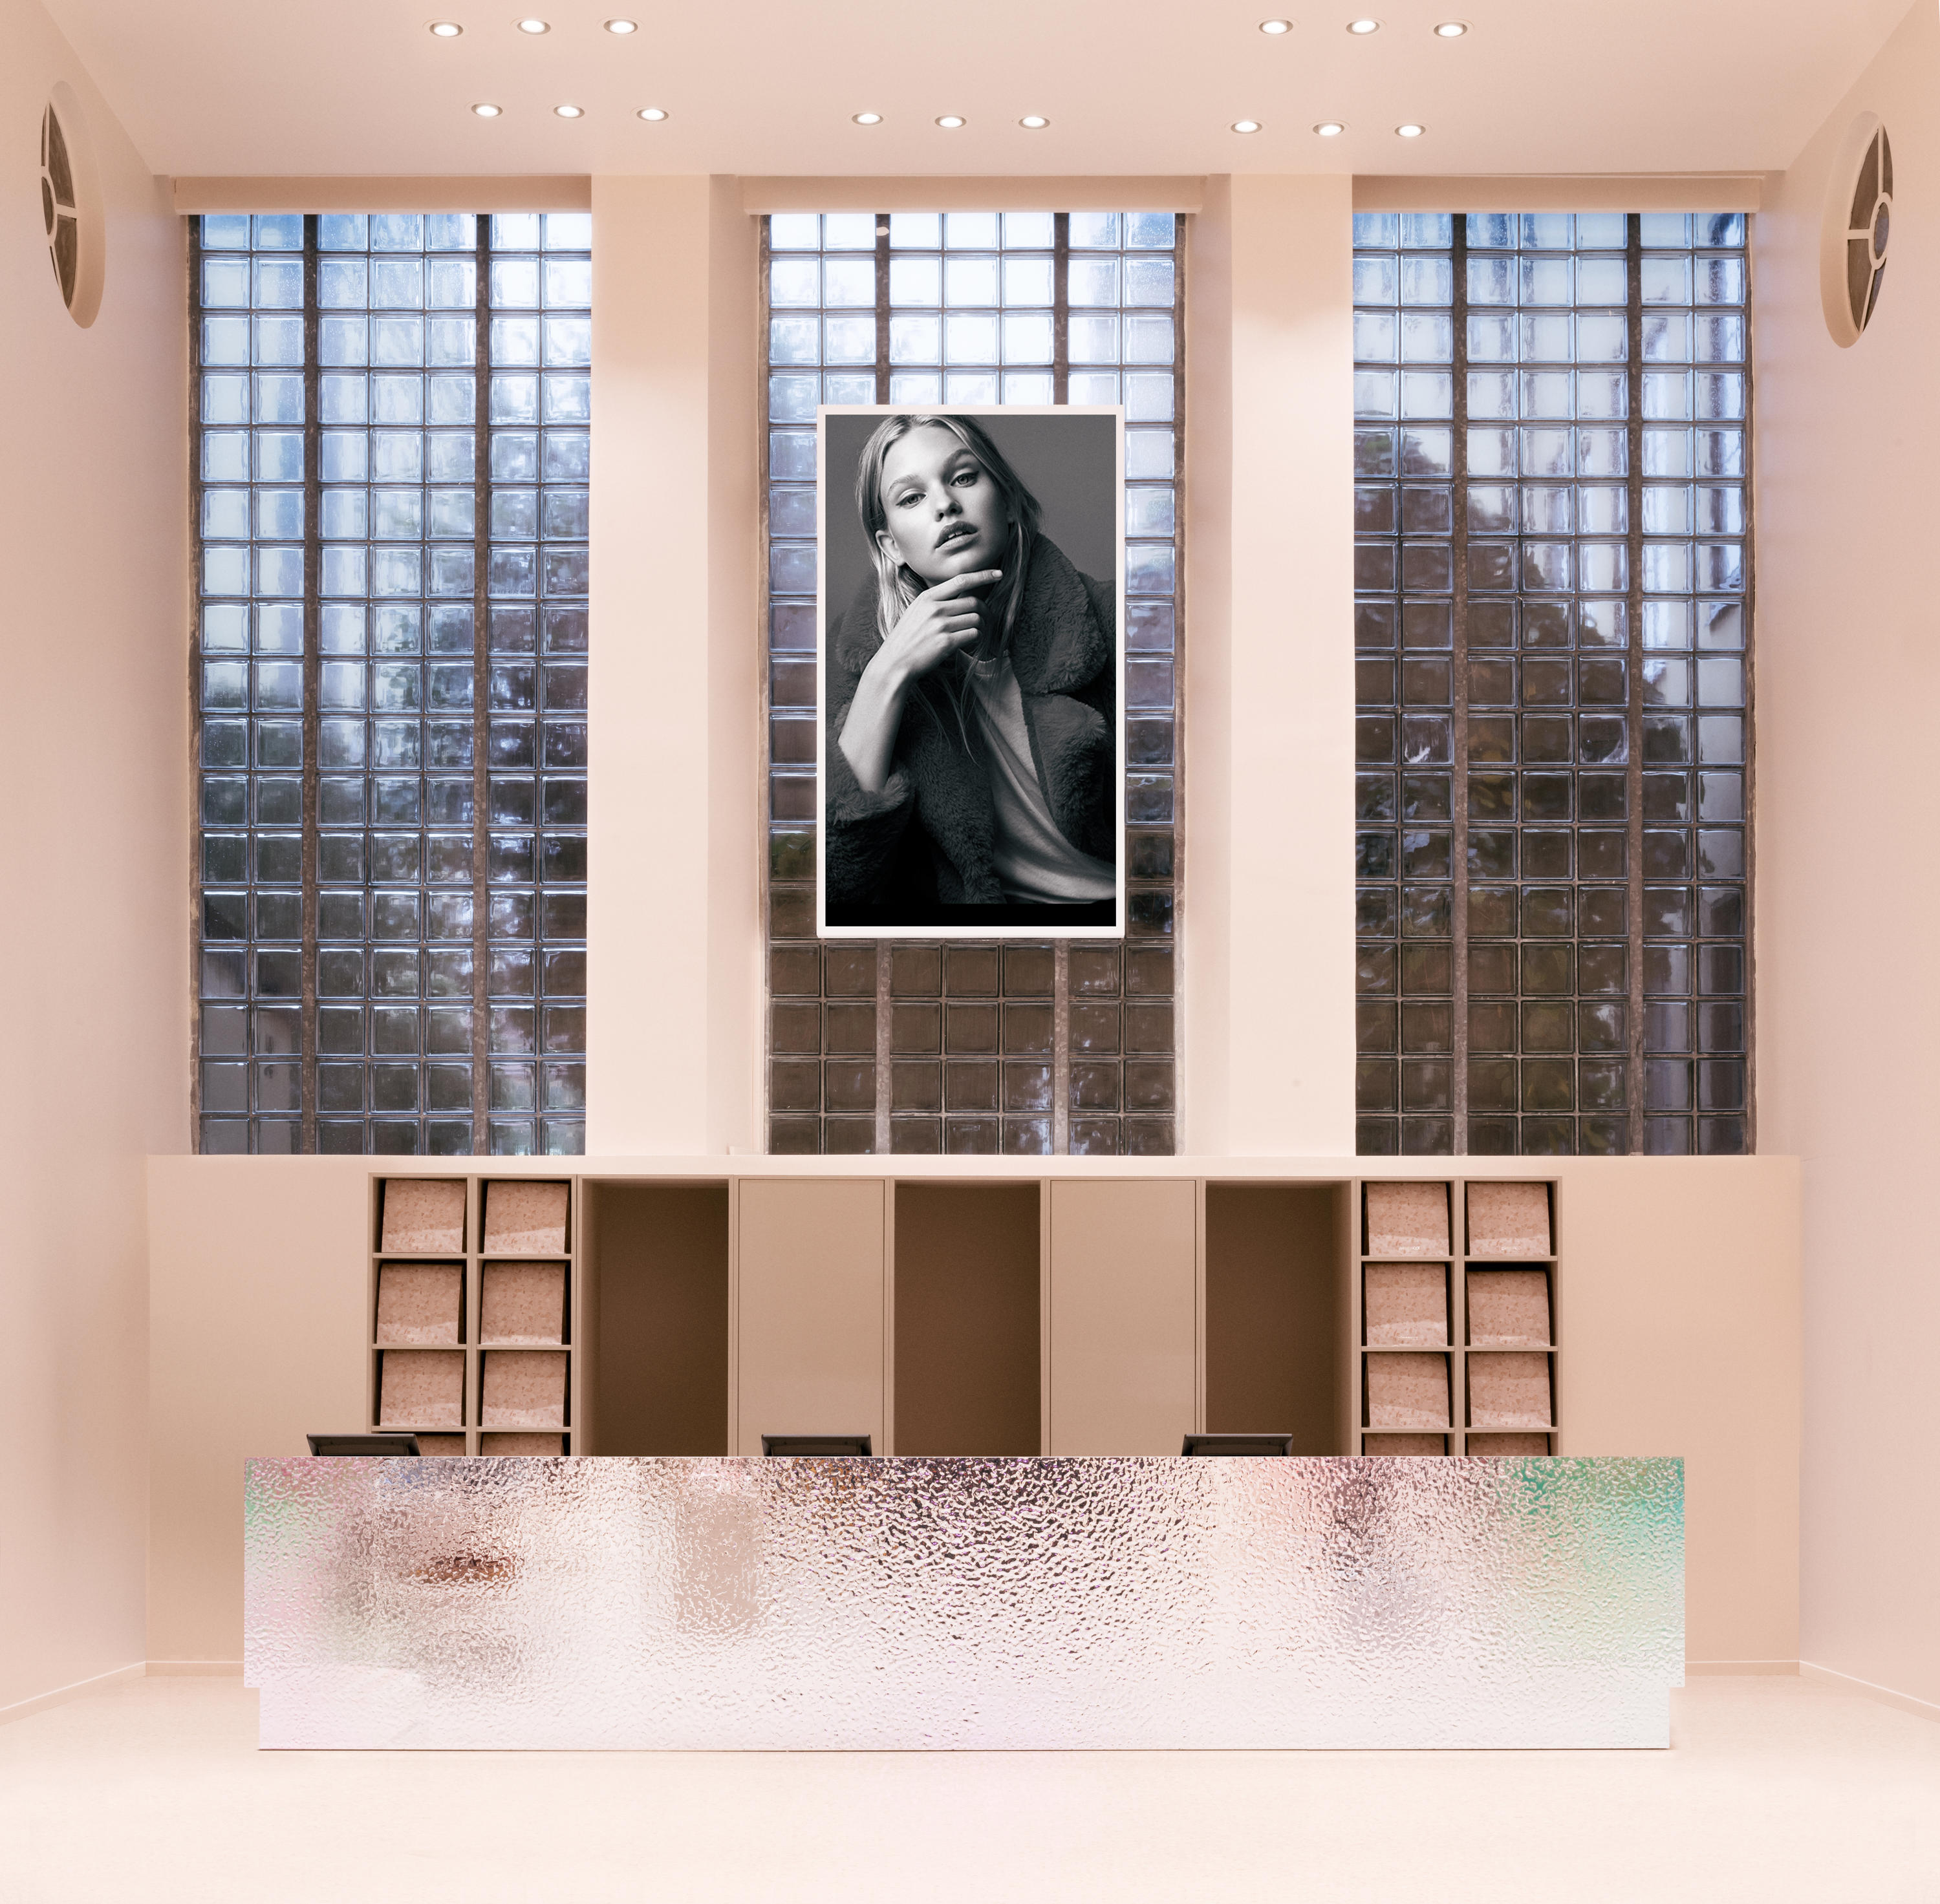 bekæmpe Hovedsagelig håndled Gina Tricot concept store by Note Design Studio | Shop interiors